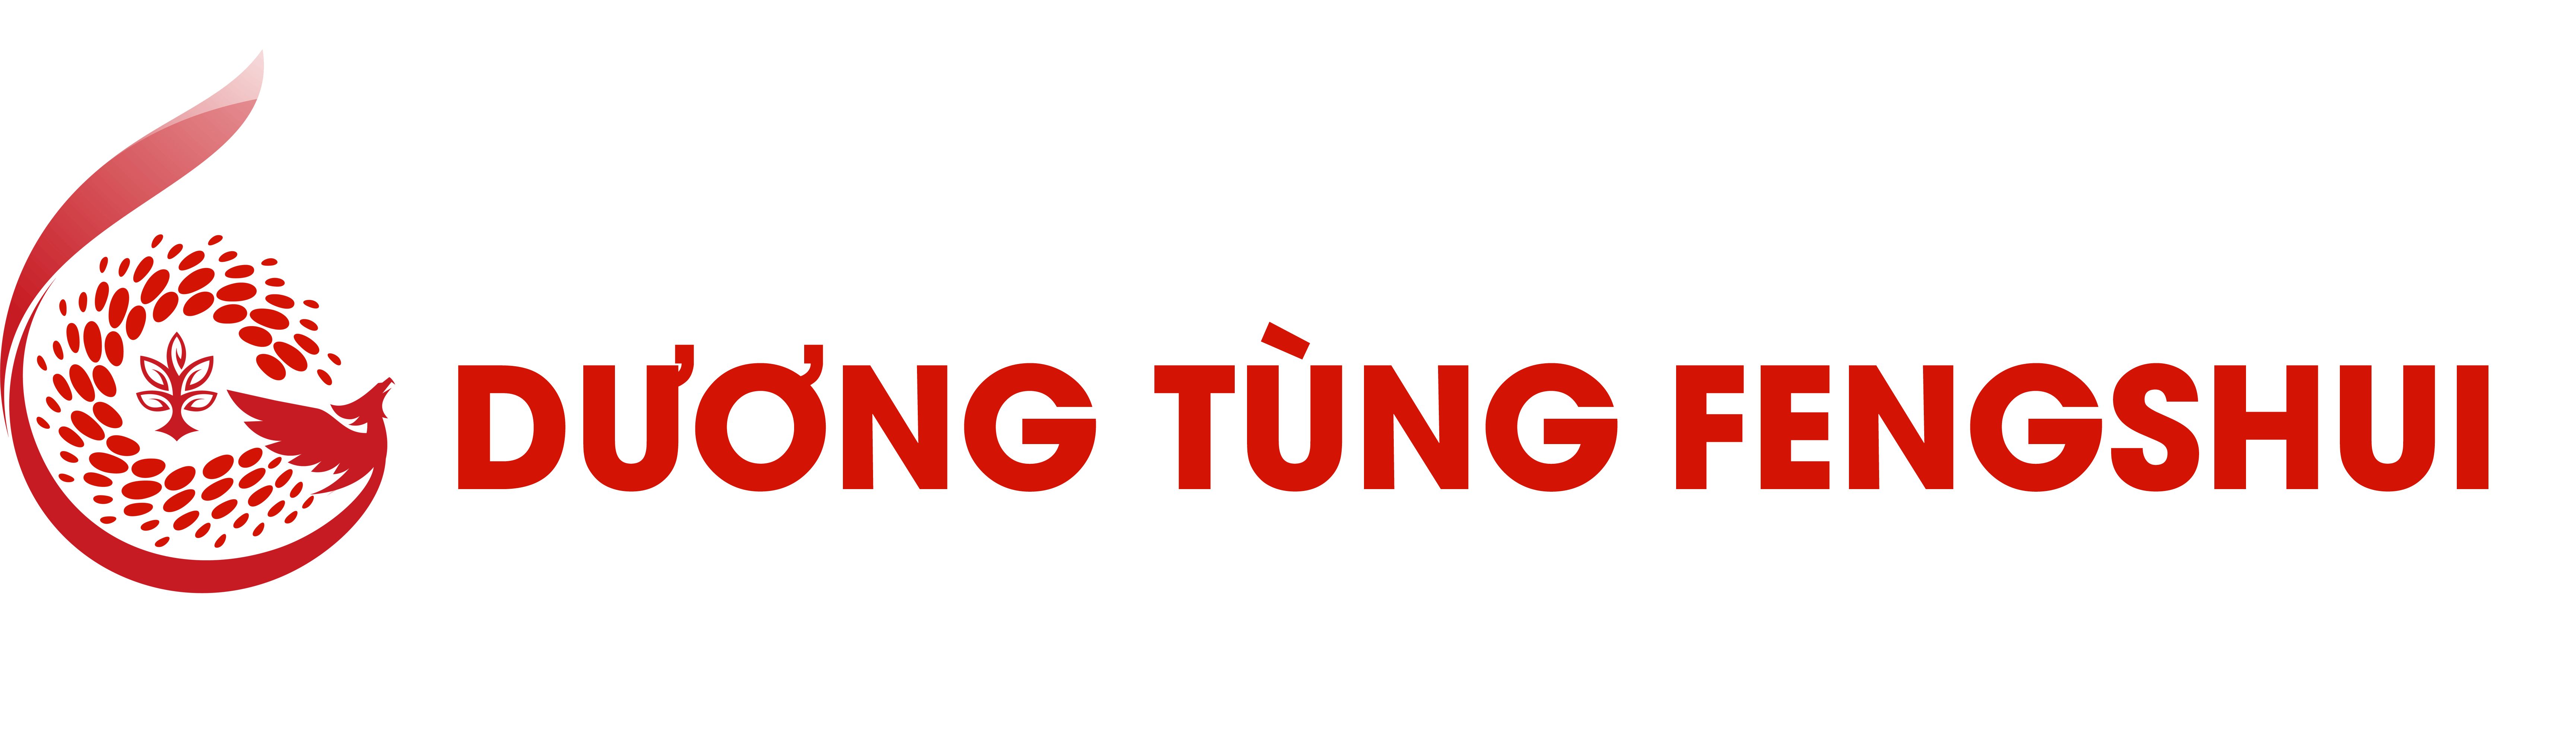 Dương Tùng  Feng Shui - Trang chia sẻ kiến thức về phong thủy